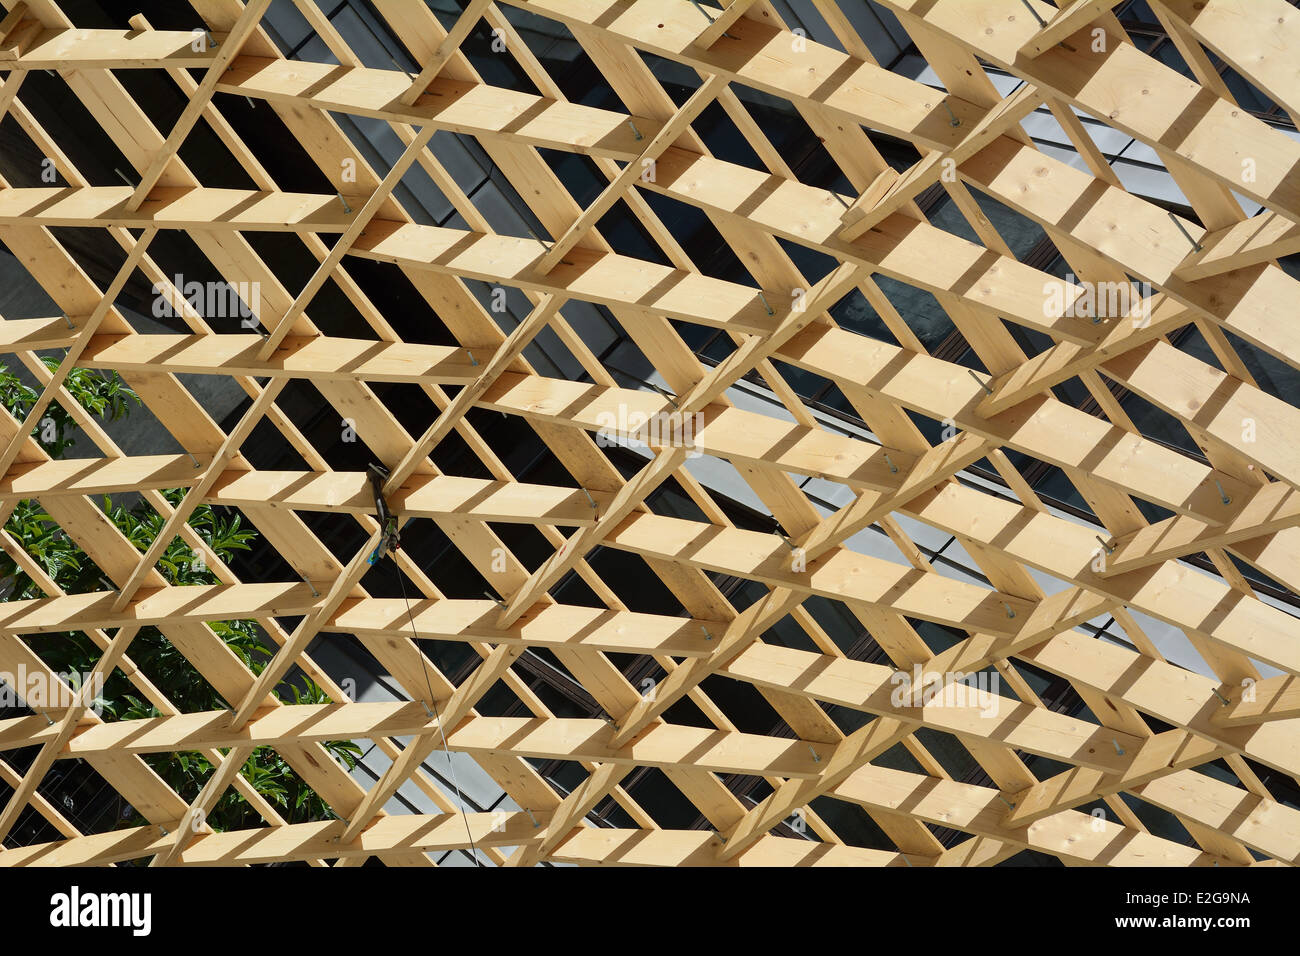 La construction en bois avec des matériaux respectueux de l'environnement Banque D'Images